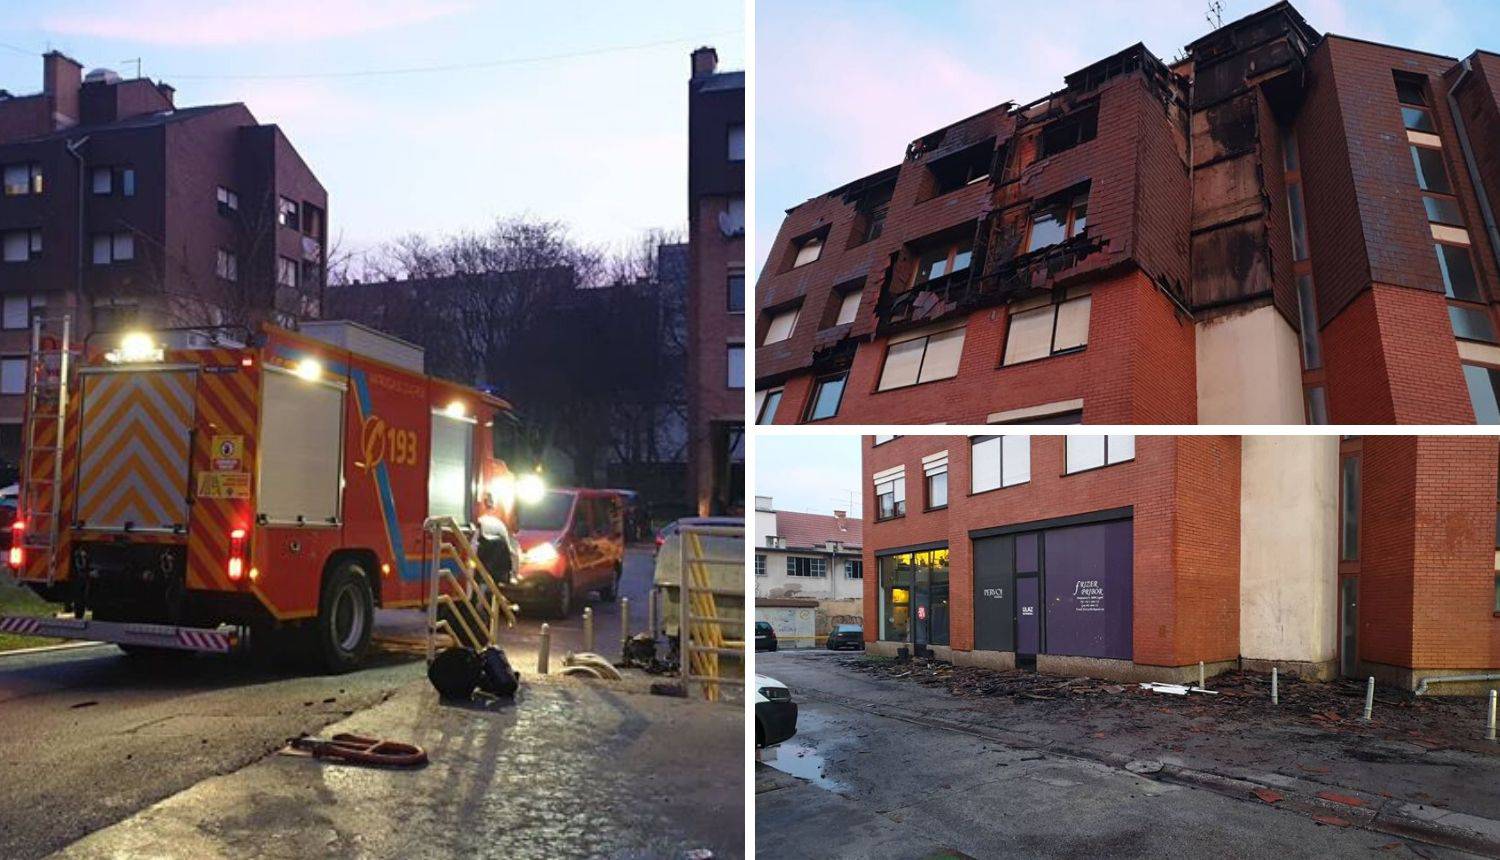 Vatrogasci i dalje na požarištu: 'Susjeda je vrištala, u šoku je'